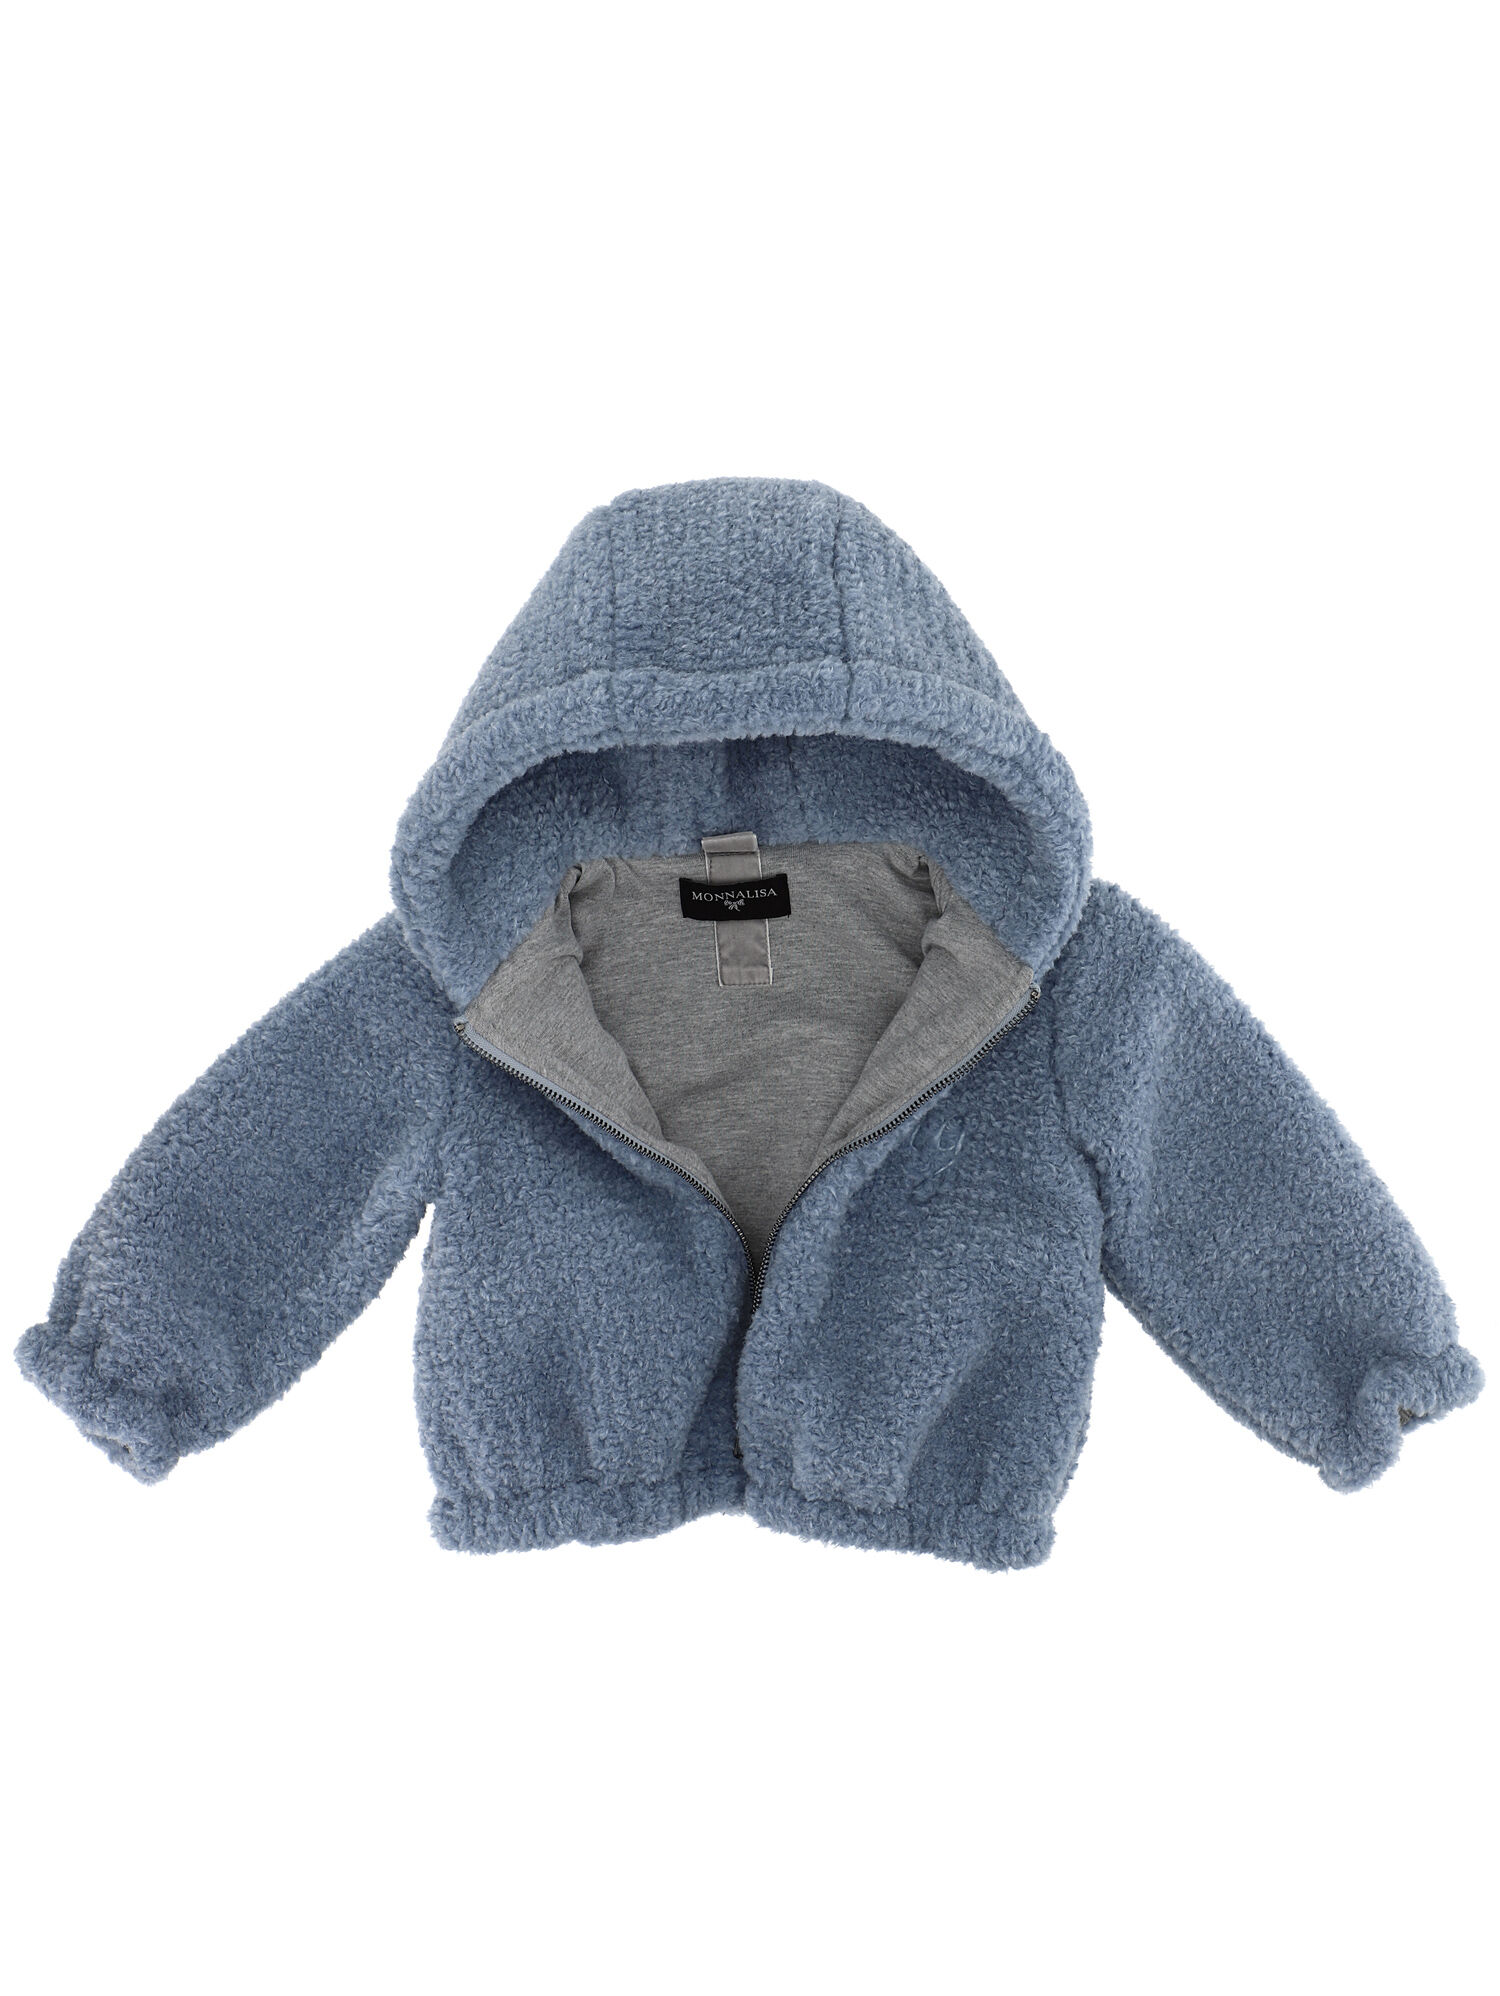 Monnalisa Boys Clothing Jackets Fleece Jackets Teddy bear-effect bomber jacket 